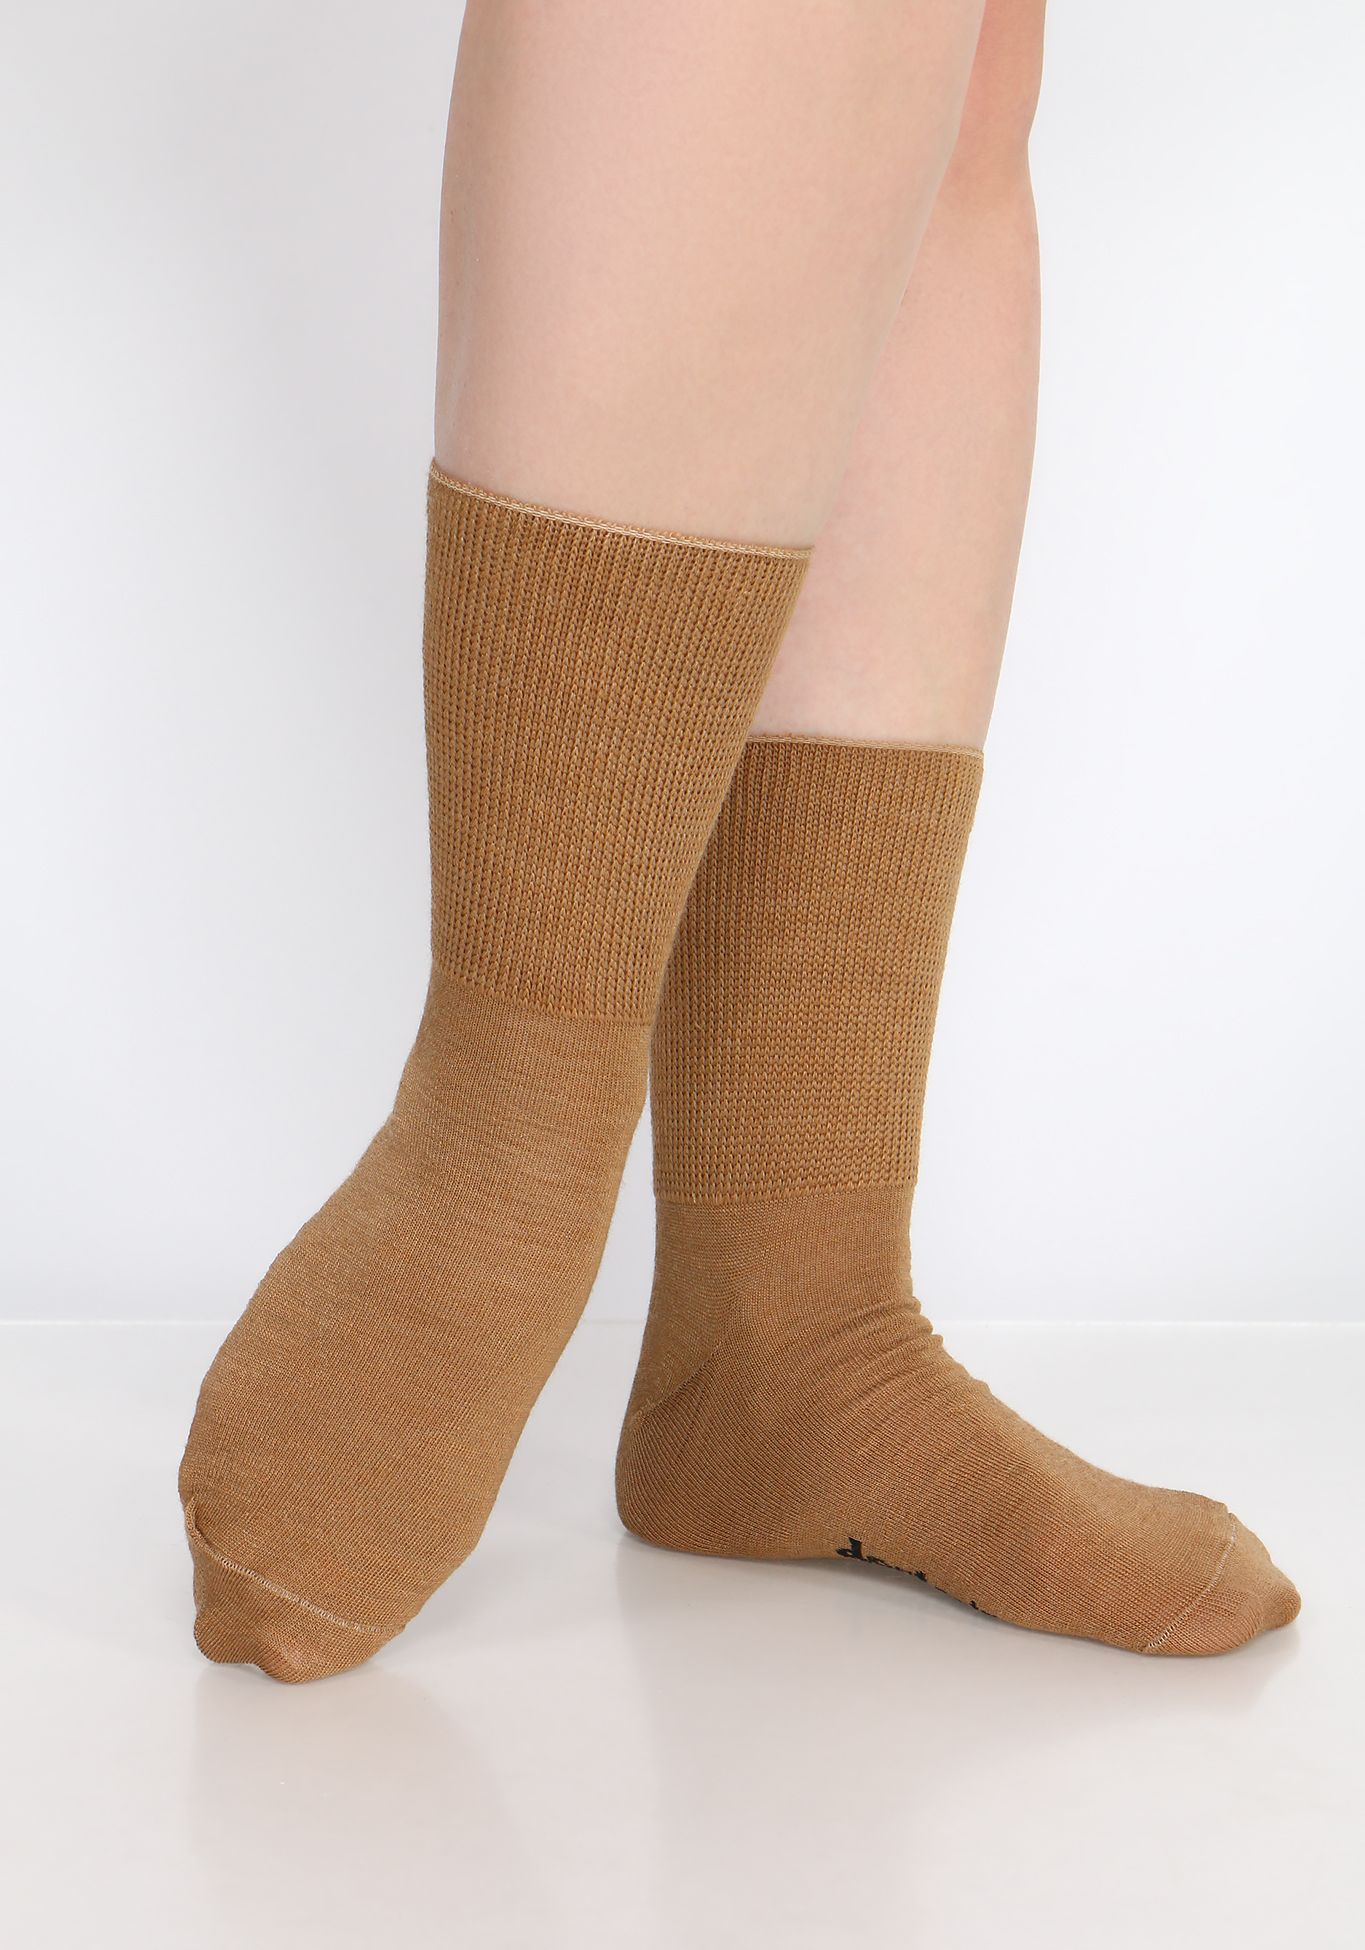 Носки на полную ногу из верблюжьей шерсти, 2 пары Центр Доктор, размер 44-45 - фото 3